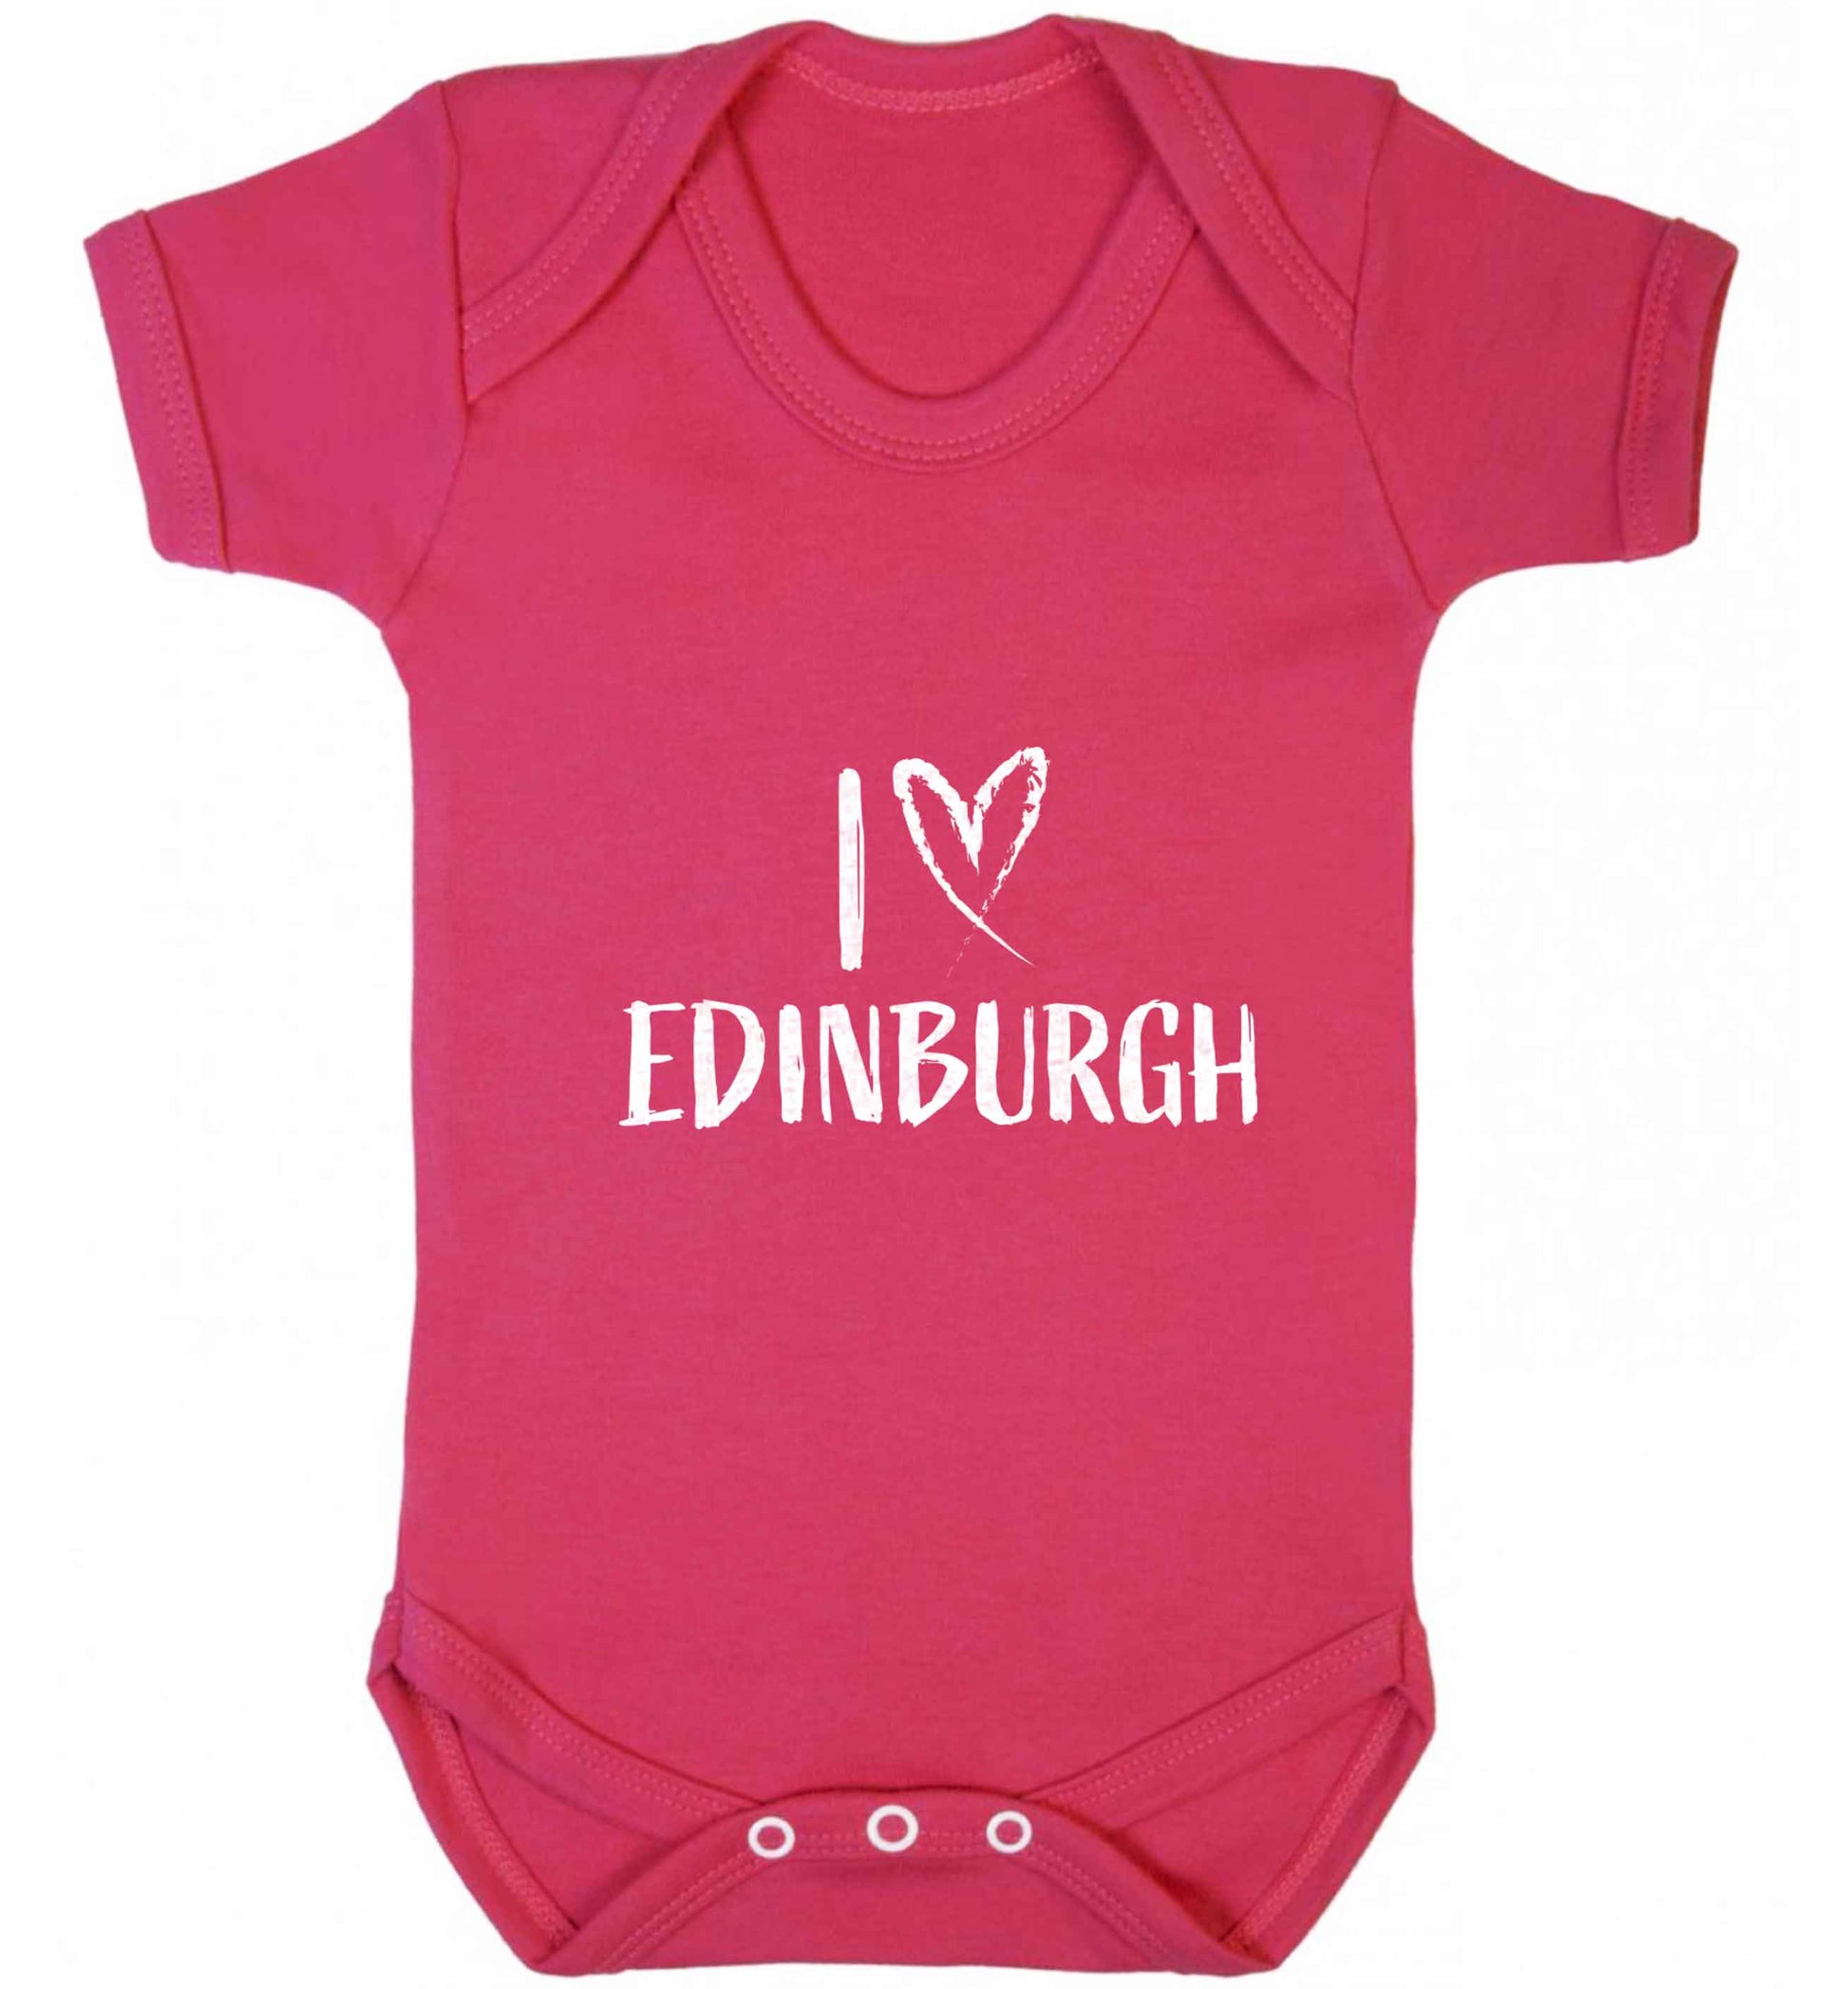 I love Edinburgh baby vest dark pink 18-24 months